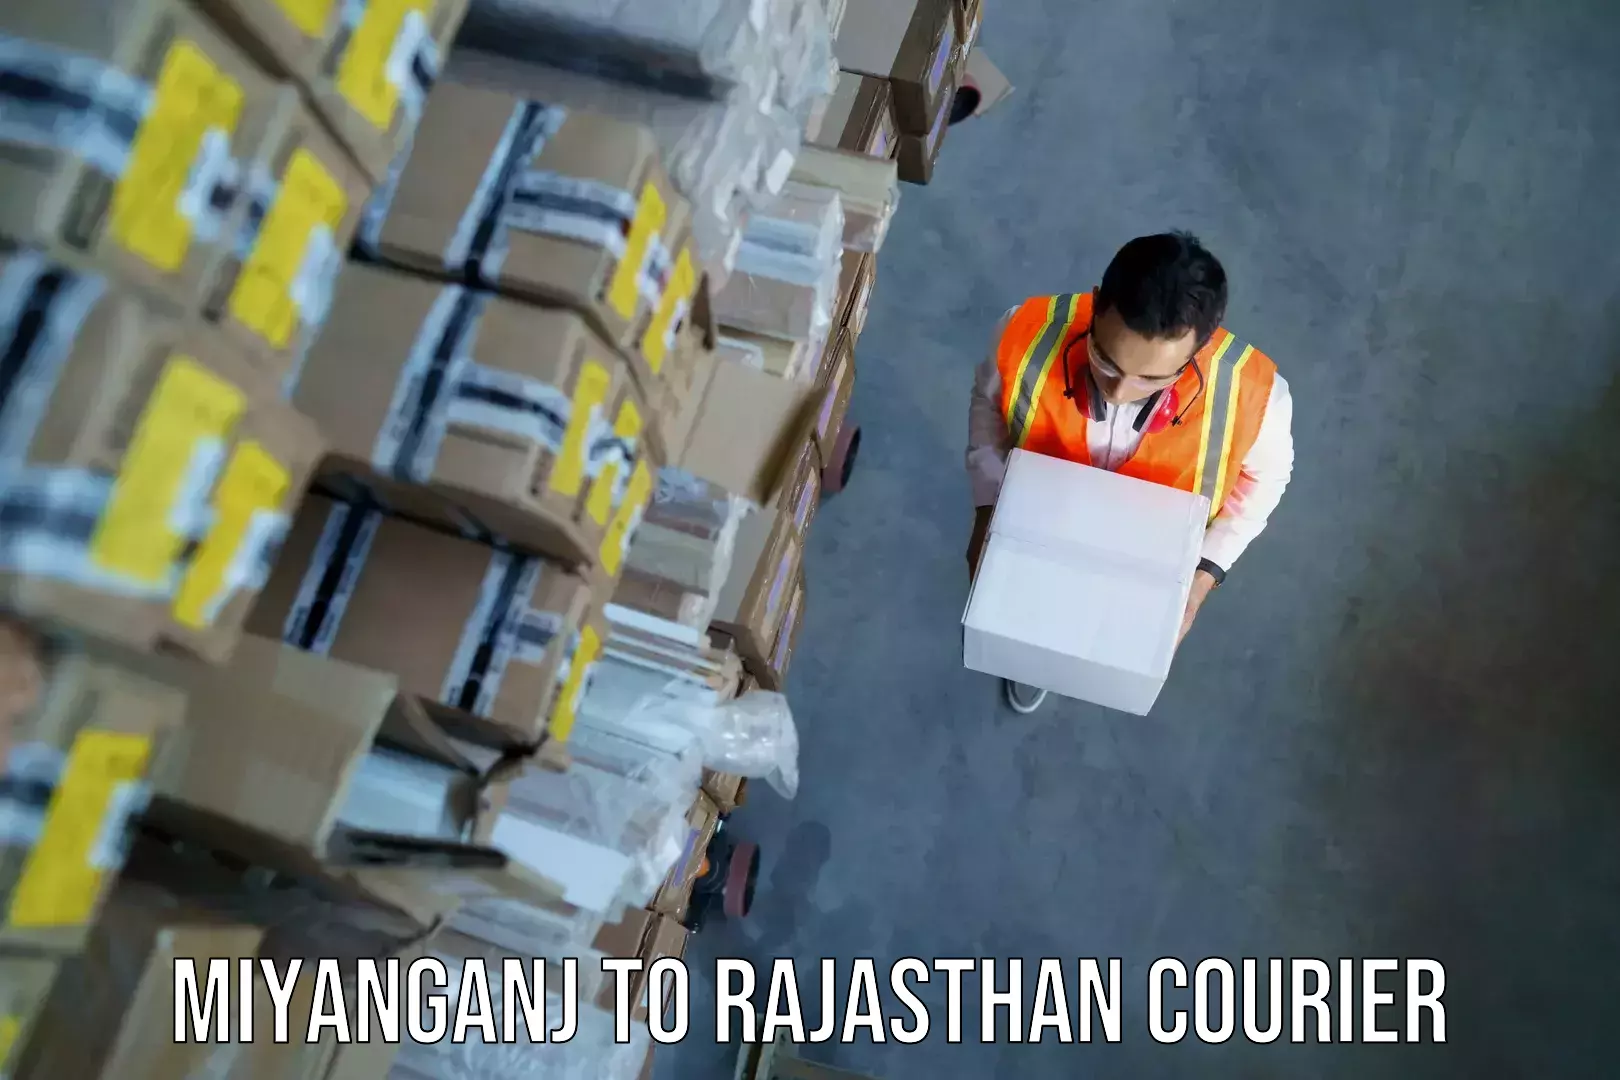 Baggage transport scheduler Miyanganj to Rajasthan